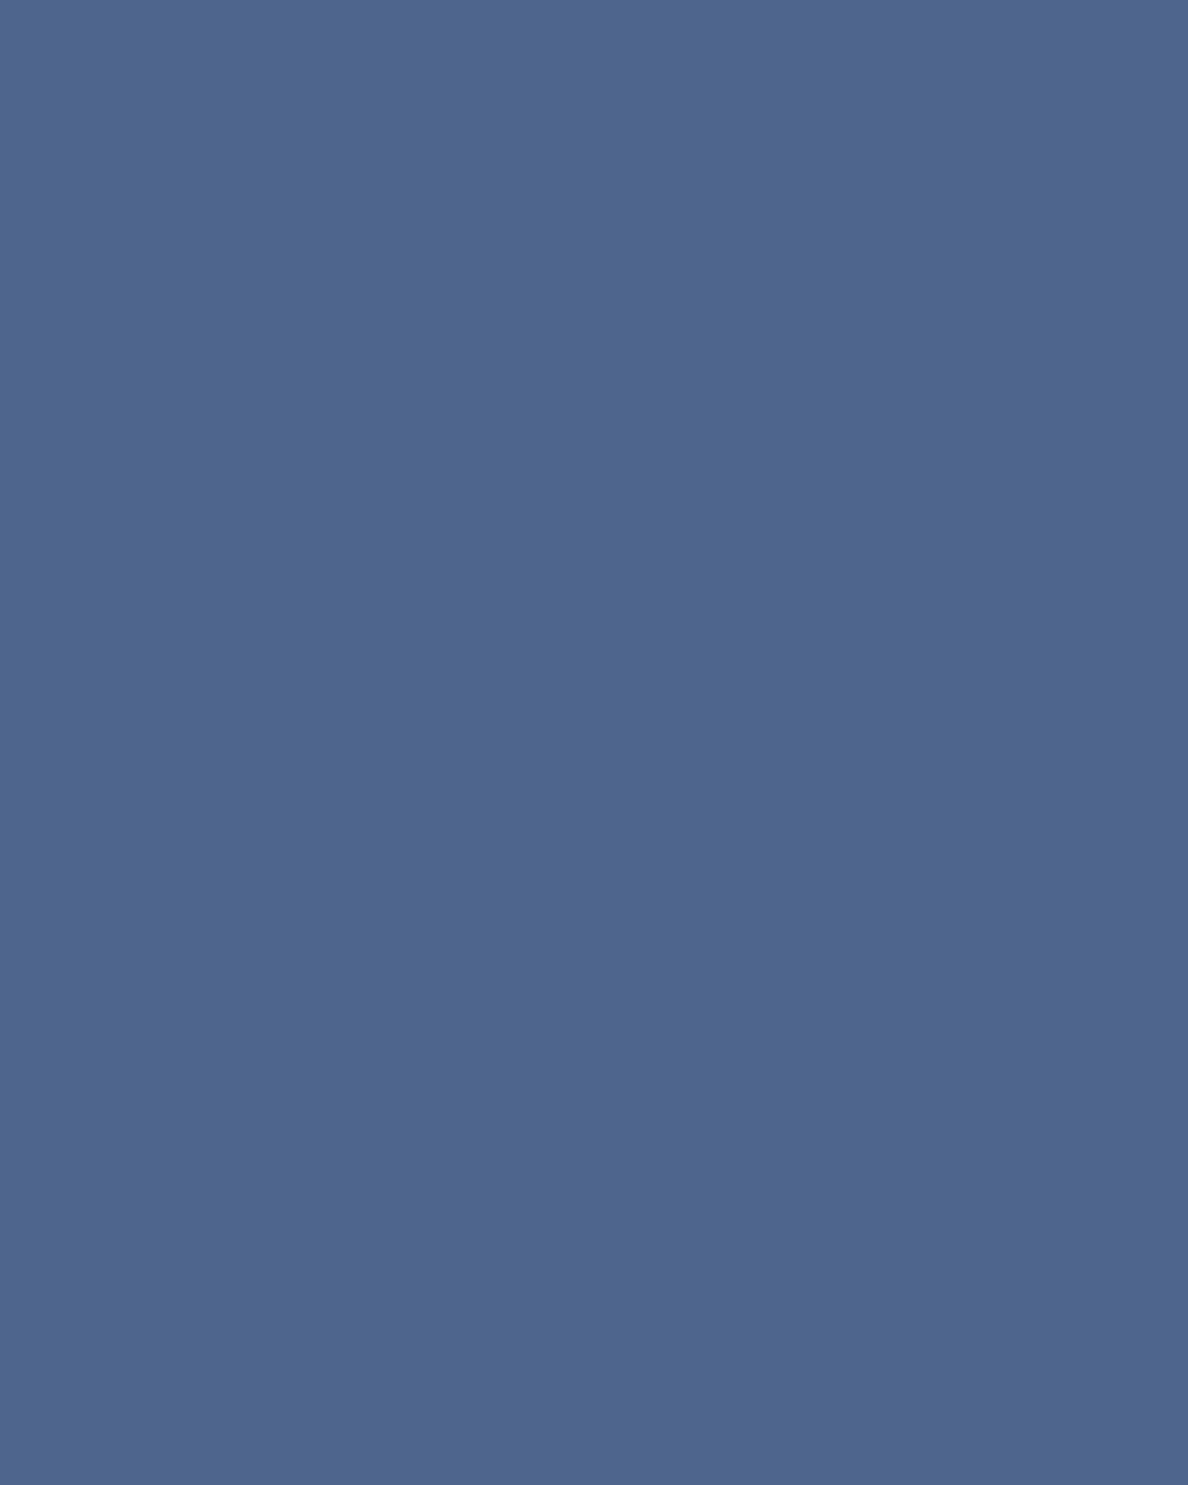 Анри Матисс. Вид из окна (марокканский триптих) (фрагмент). 1912–1913. Государственный музей изобразительных искусств им. А.С. Пушкина, Москва